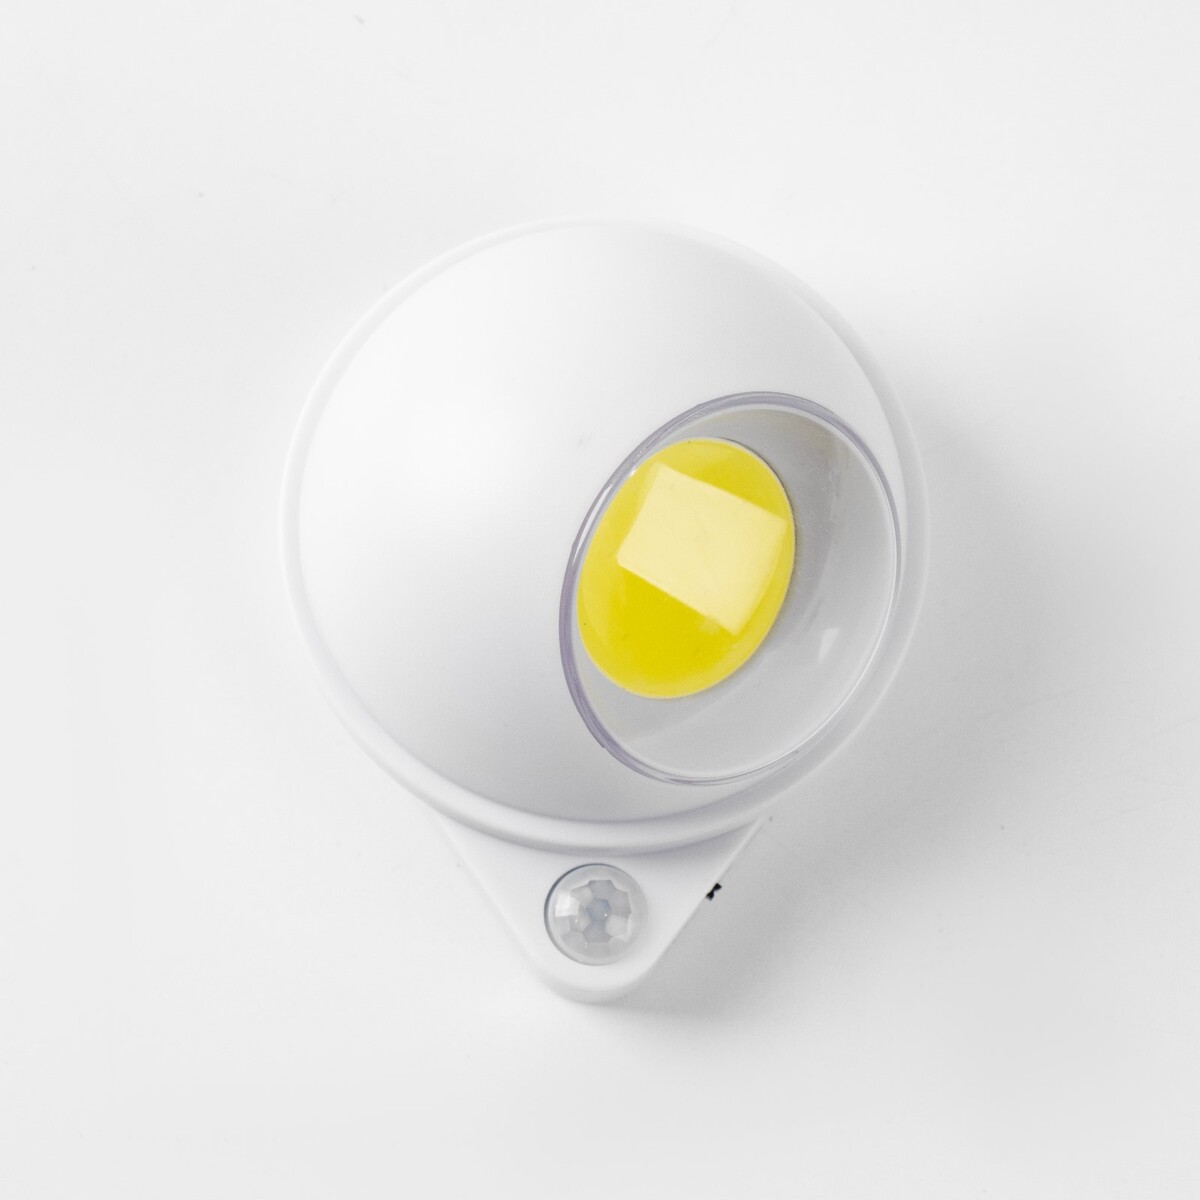 Фонарь-светильник, 200 лм, cob, 3 ааа, магнит, клейкая основа, датчик движения, 7.5х9.2 см видеоняня babymonitor беспроводная камера датчик движения wifi